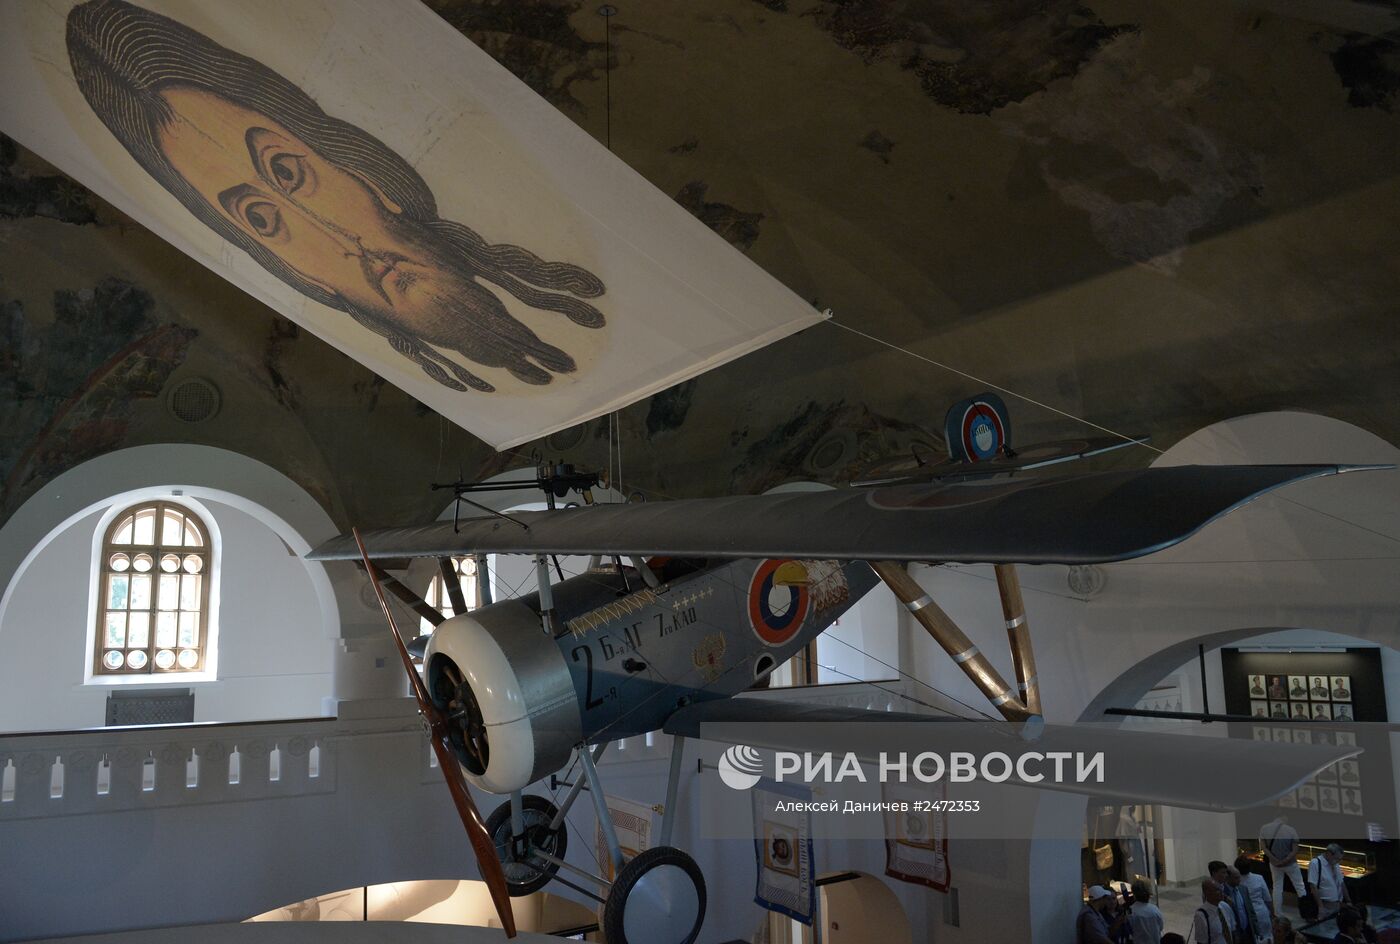 Открытие музея "Россия в Великой войне" в Царском селе